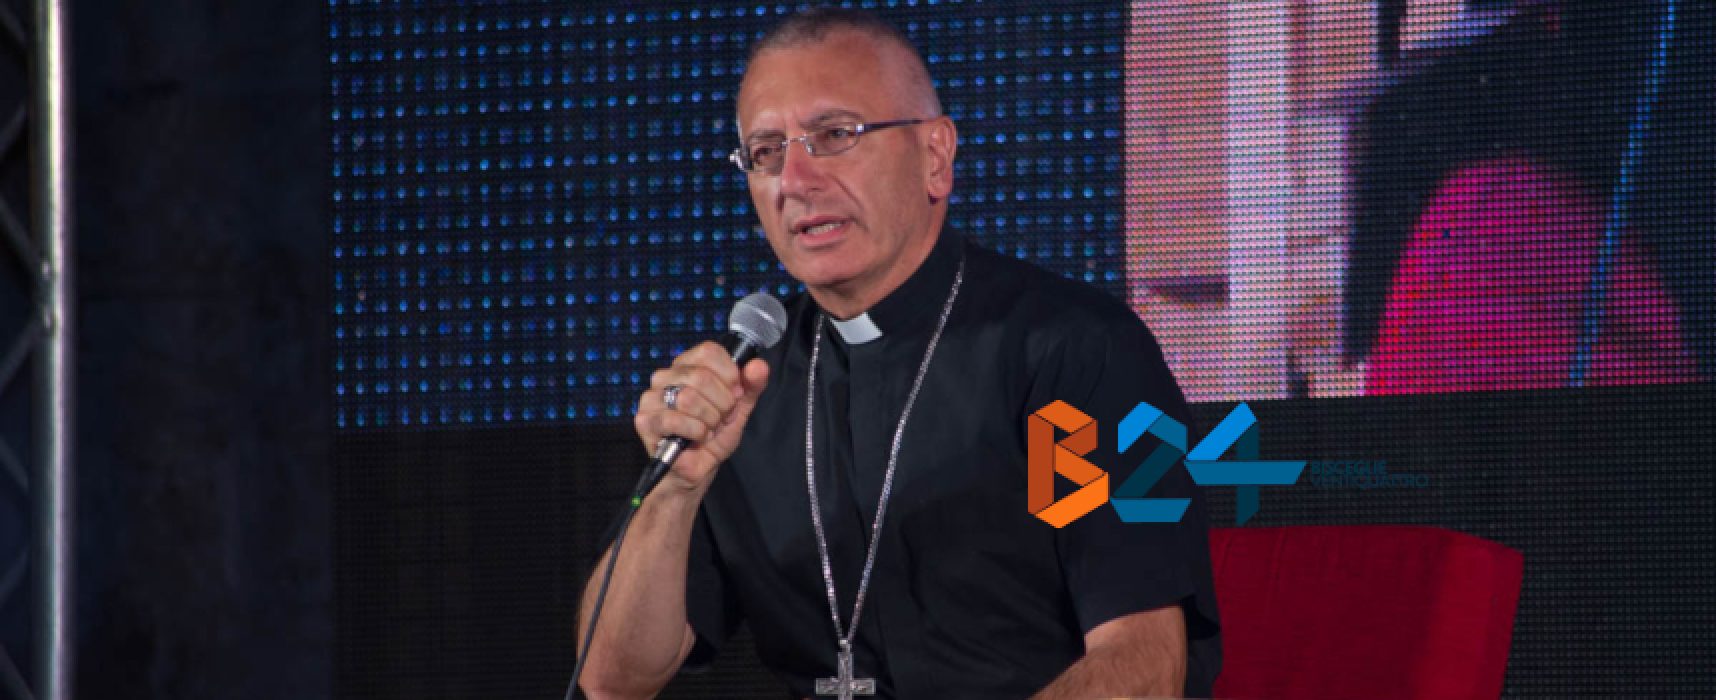 Epass: convegno su politica, religione e immigrazione con Monsignor D’Ascenzo